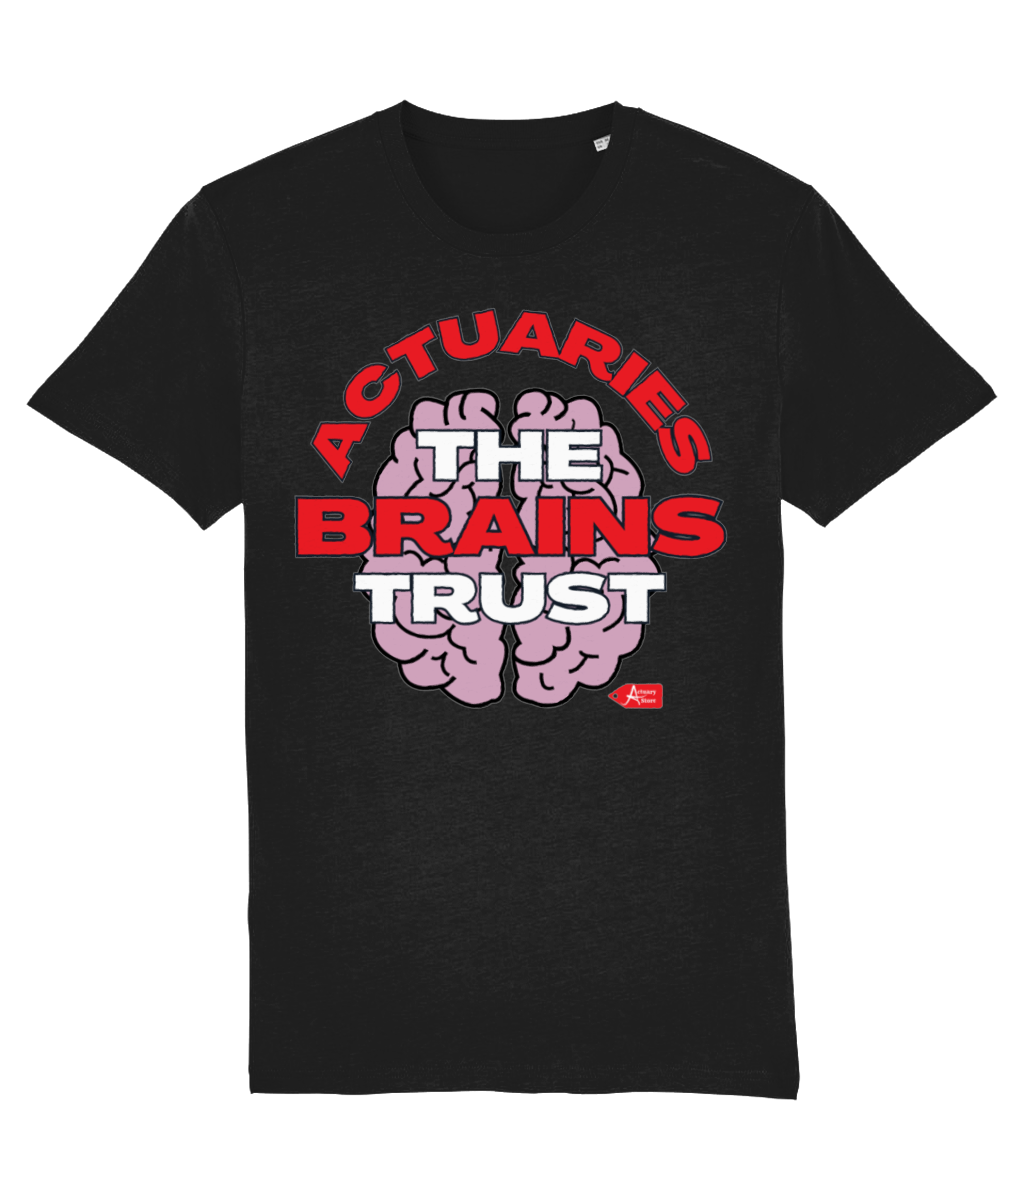 Actuaries The Brains Trust T-Shirt